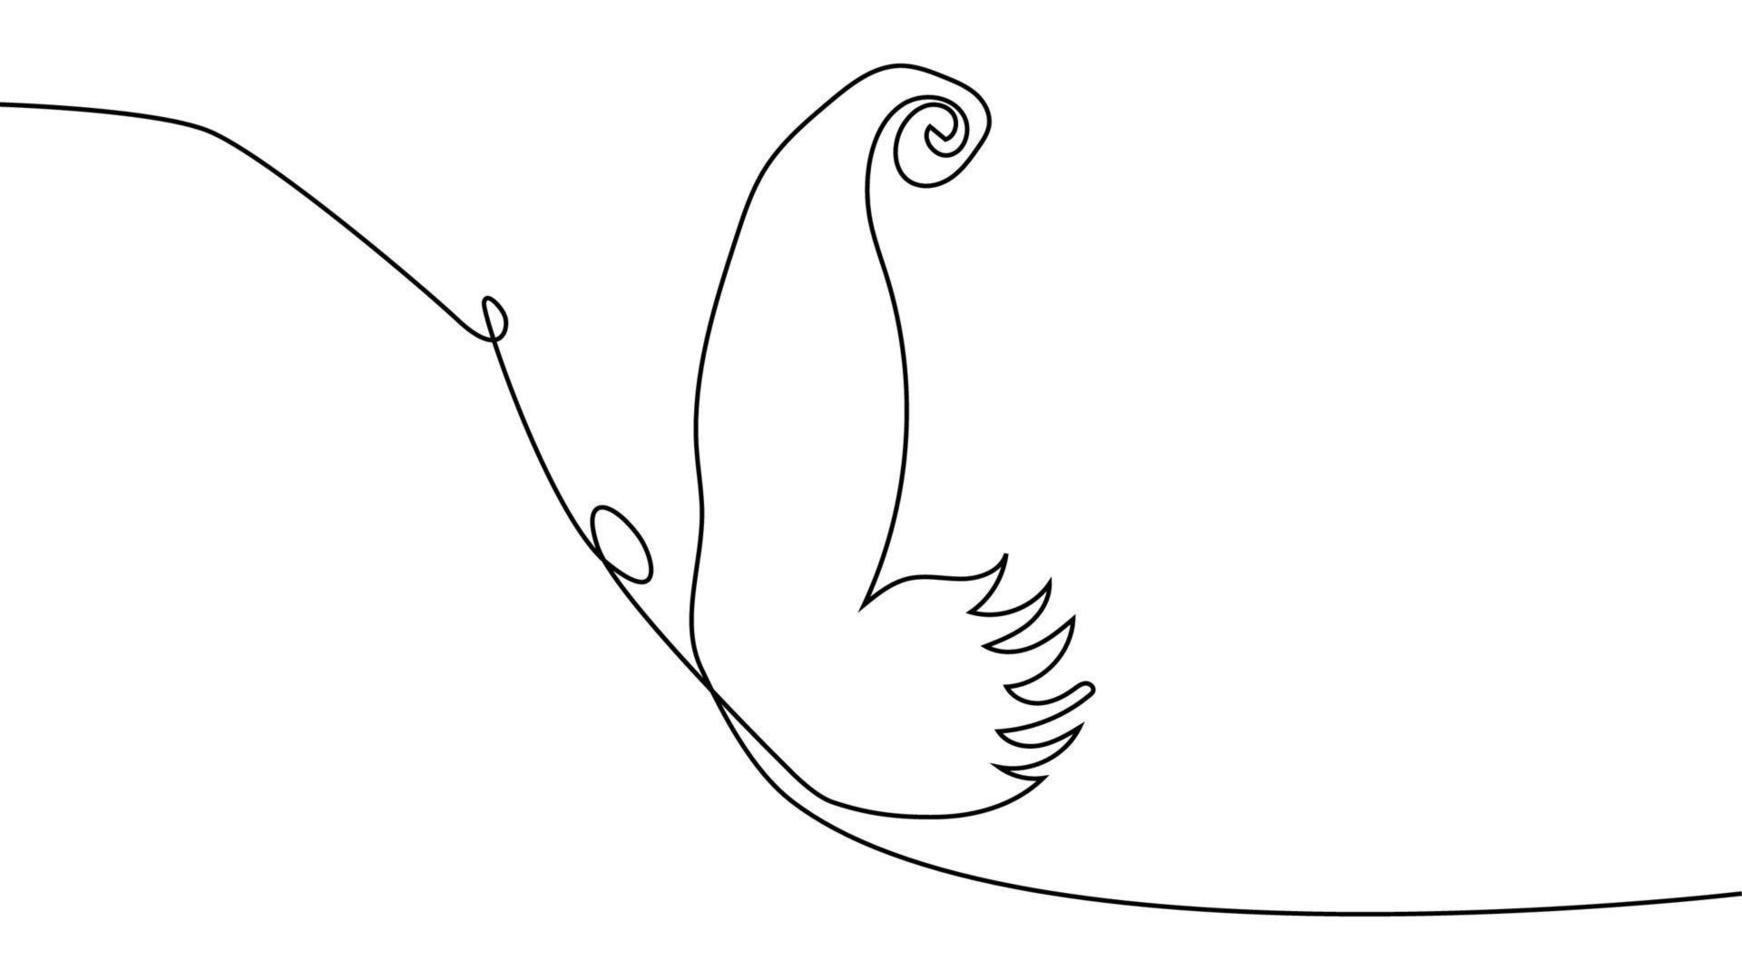 desenho contínuo de uma linha. logotipo de borboleta voadora. ilustração preto e branco. conceito de logotipo, cartão, banner vetor